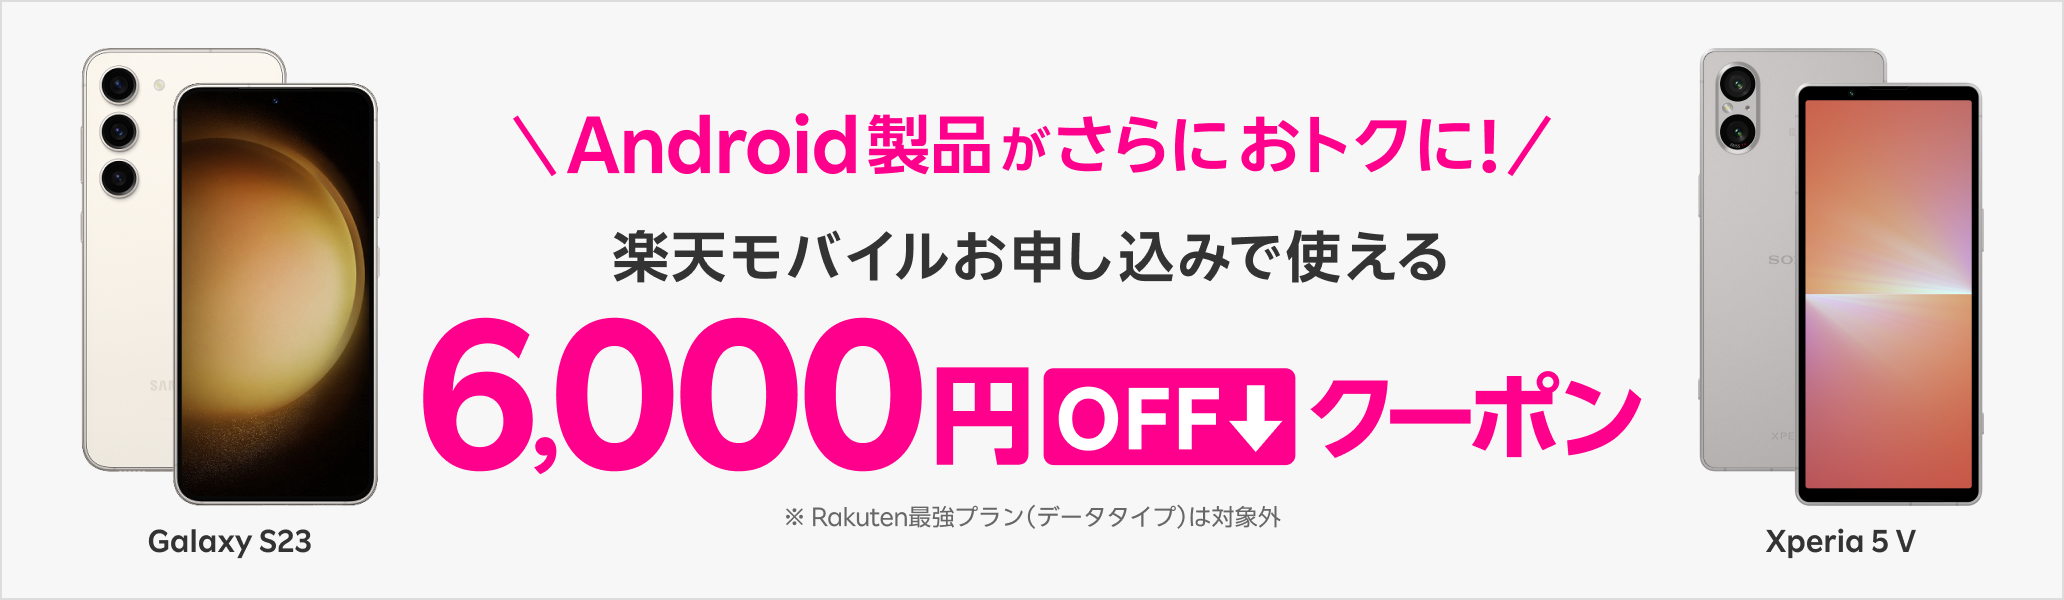 Android製品がさらにおトクに！楽天モバイルお申し込みで使える6,000円OFFクーポン※ Rakuten最強プラン（データタイプ）は対象外